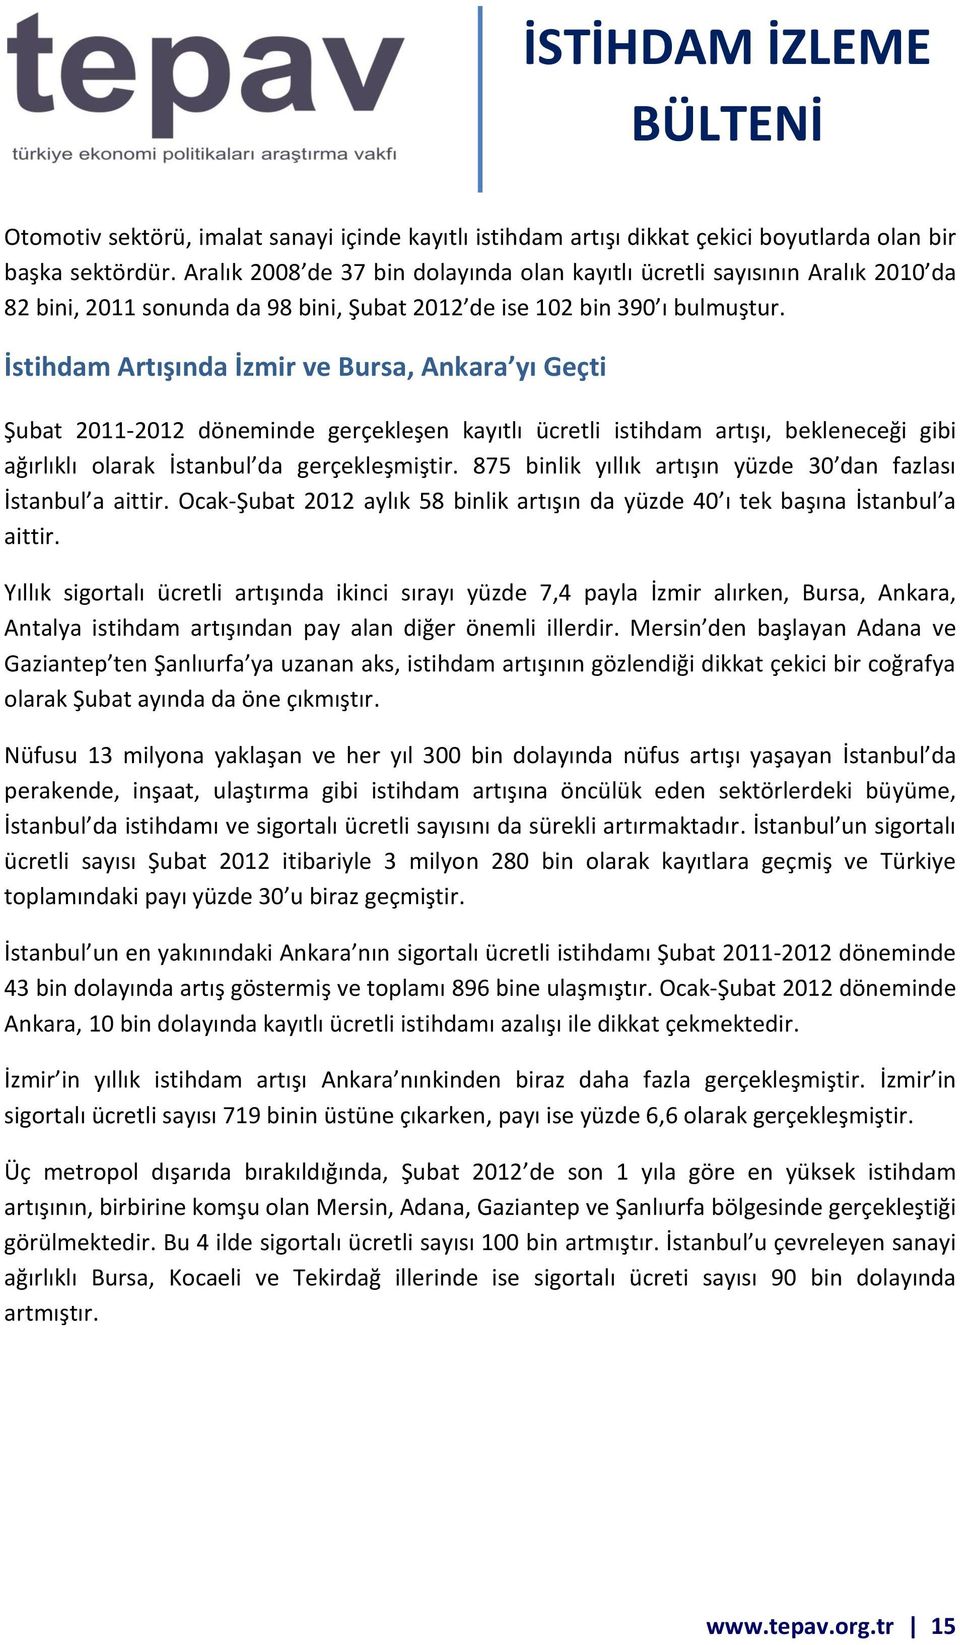 İstihdam Artışında İzmir ve Bursa, Ankara yı Geçti 2011-2012 döneminde gerçekleşen kayıtlı ücretli istihdam artışı, bekleneceği gibi ağırlıklı olarak İstanbul da gerçekleşmiştir.